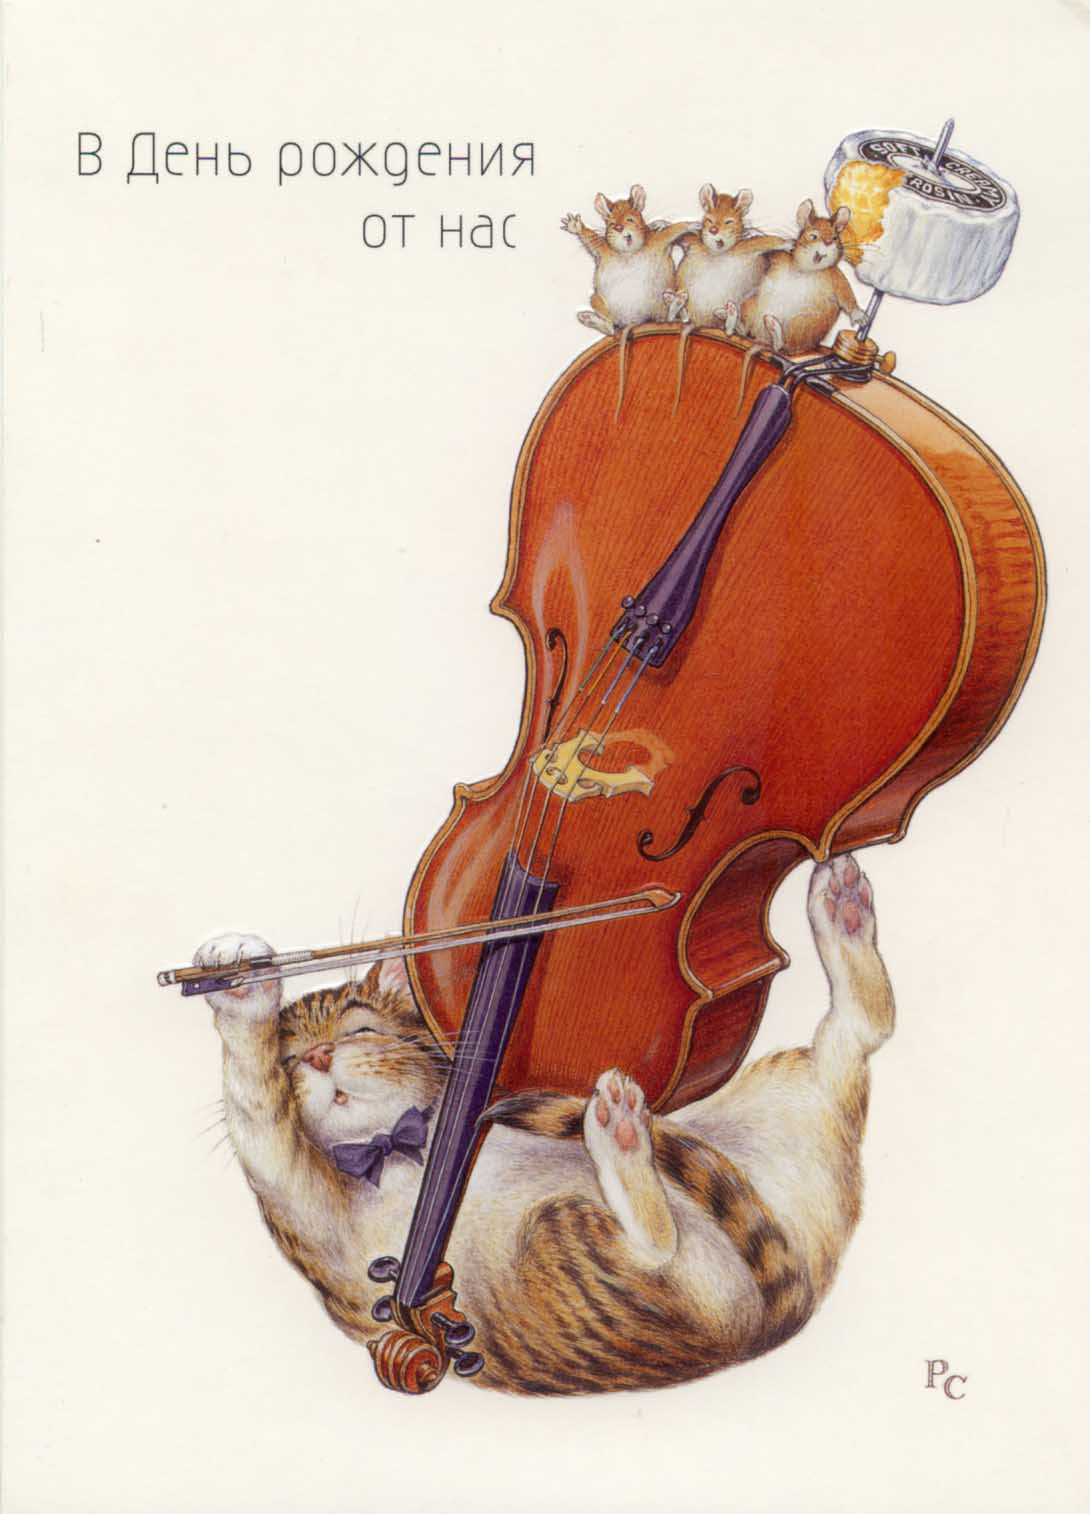 Хомяк со скрипкой. Скрипка. Виолончель иллюстрация. Кот с музыкальным инструментом. С днем рождения виолончелиста.